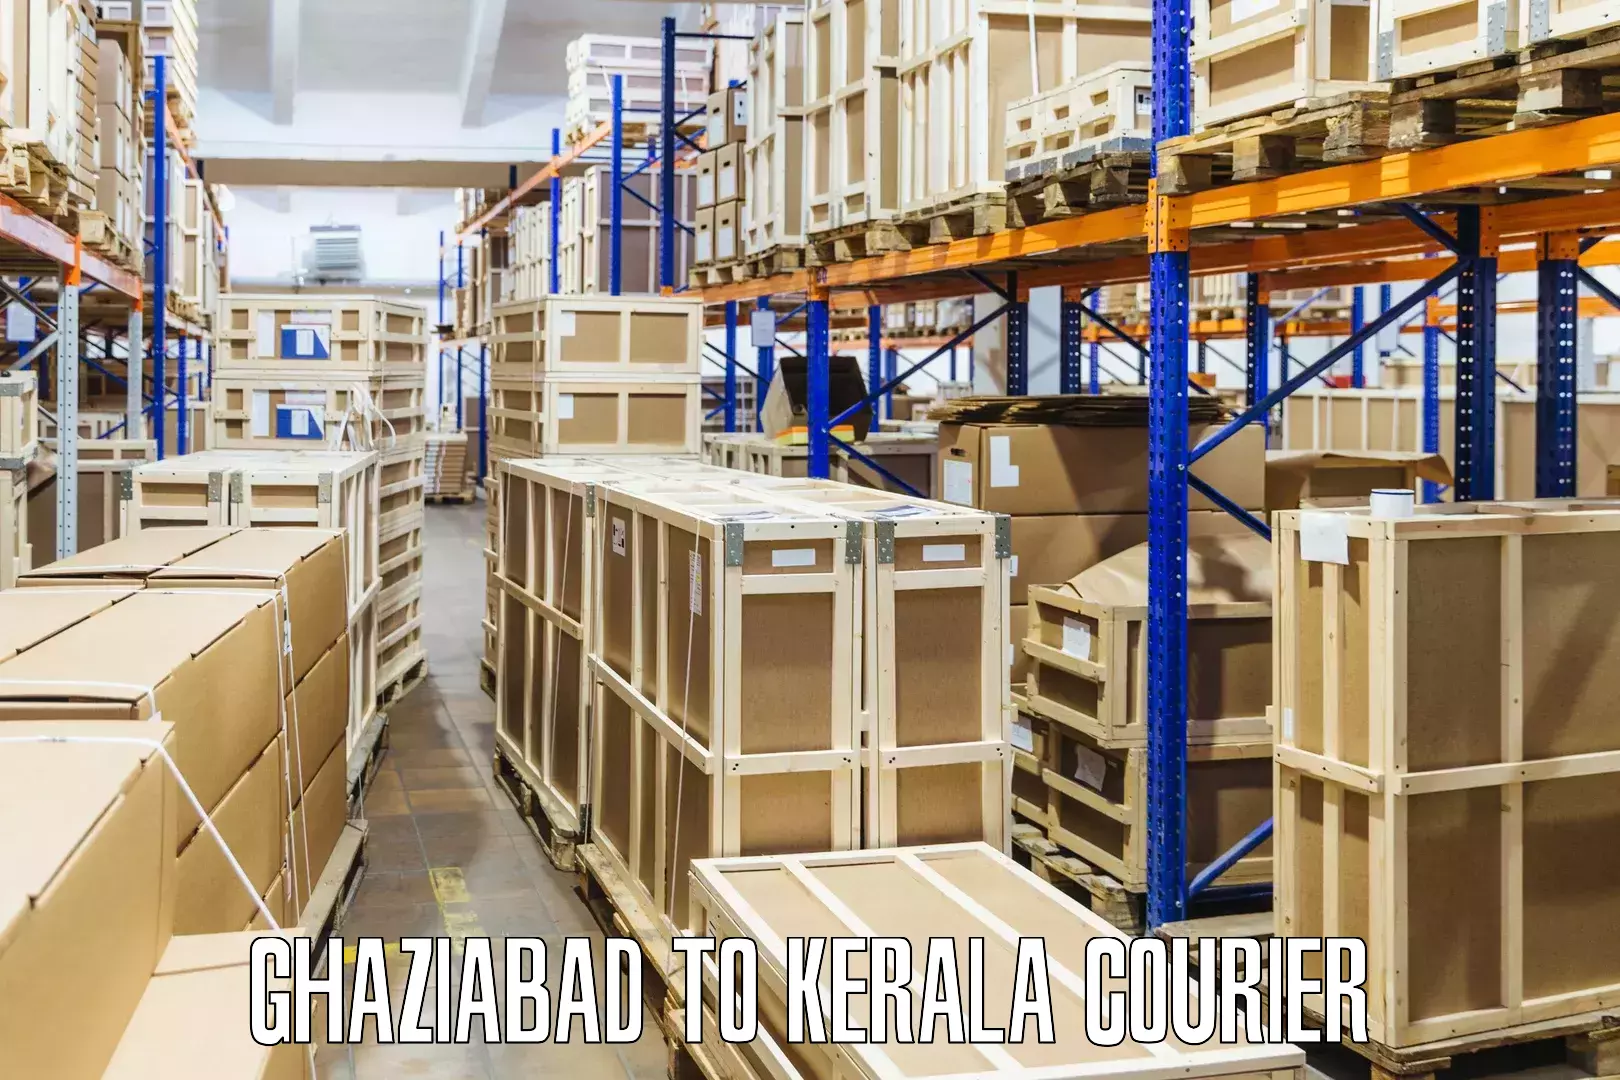 Expedited shipping methods Ghaziabad to IIIT Kottayam